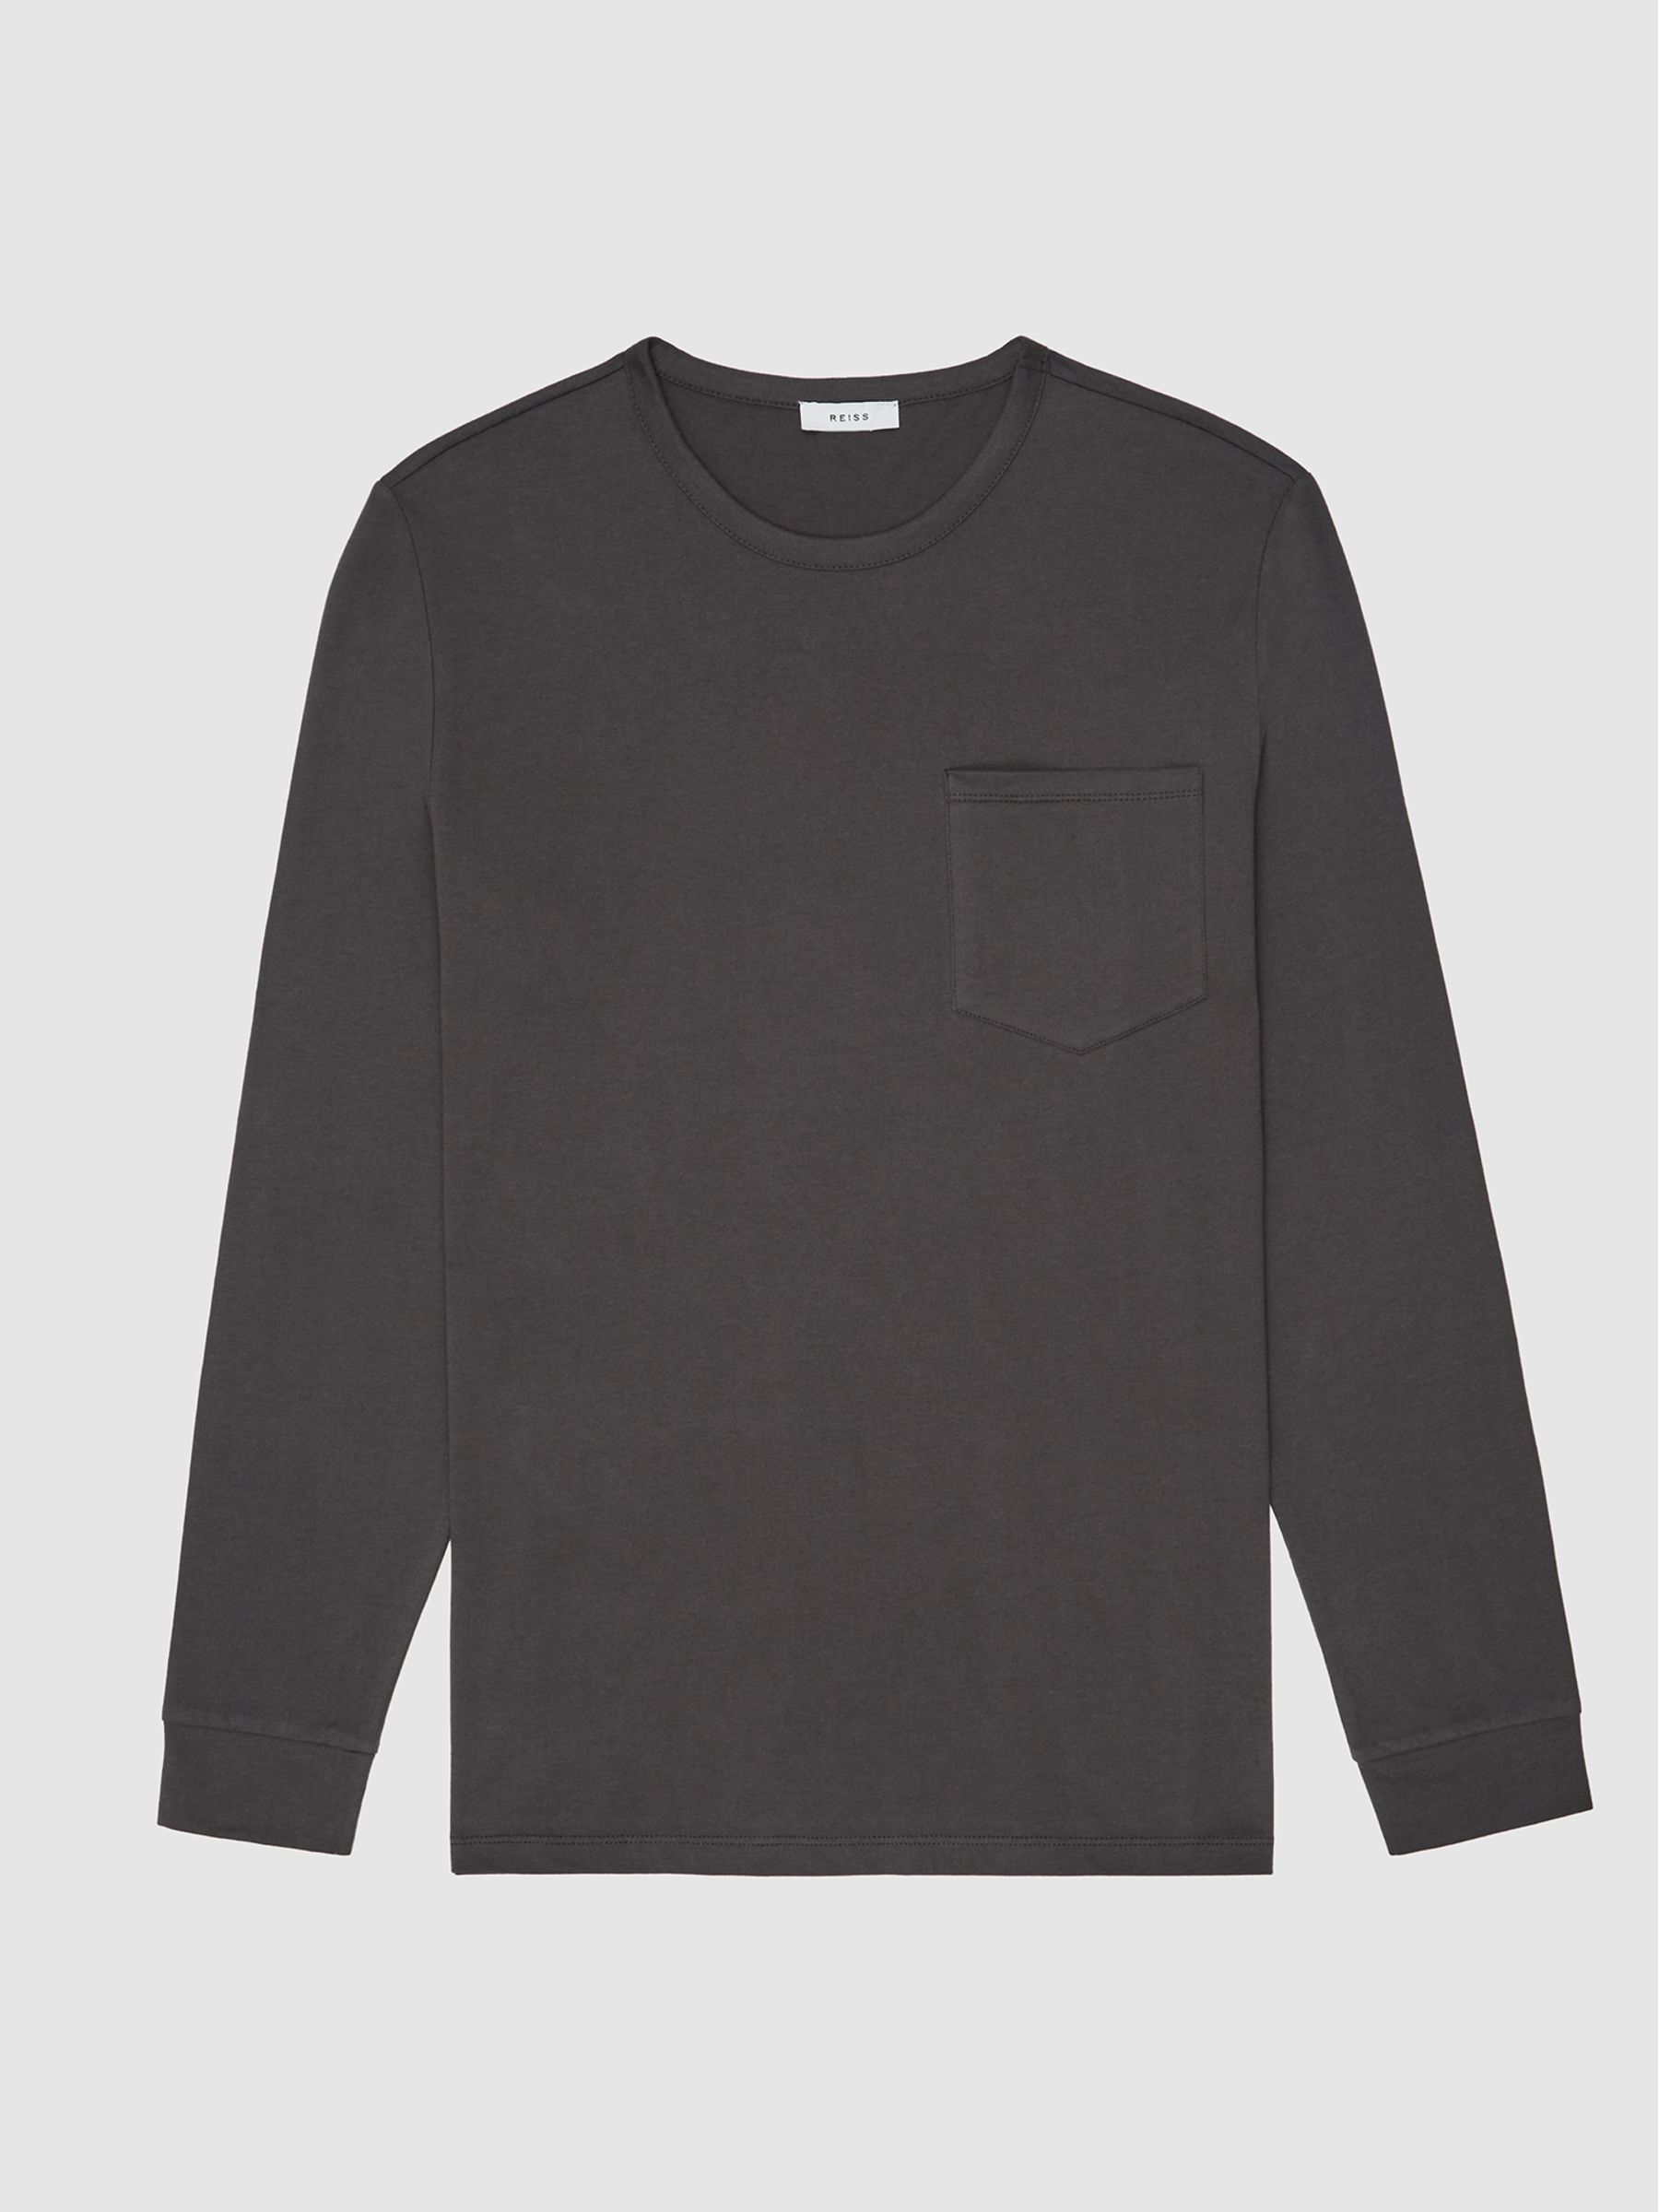 Reiss Avenue Garment Dyed Long Sleeve T-Shirt - REISS